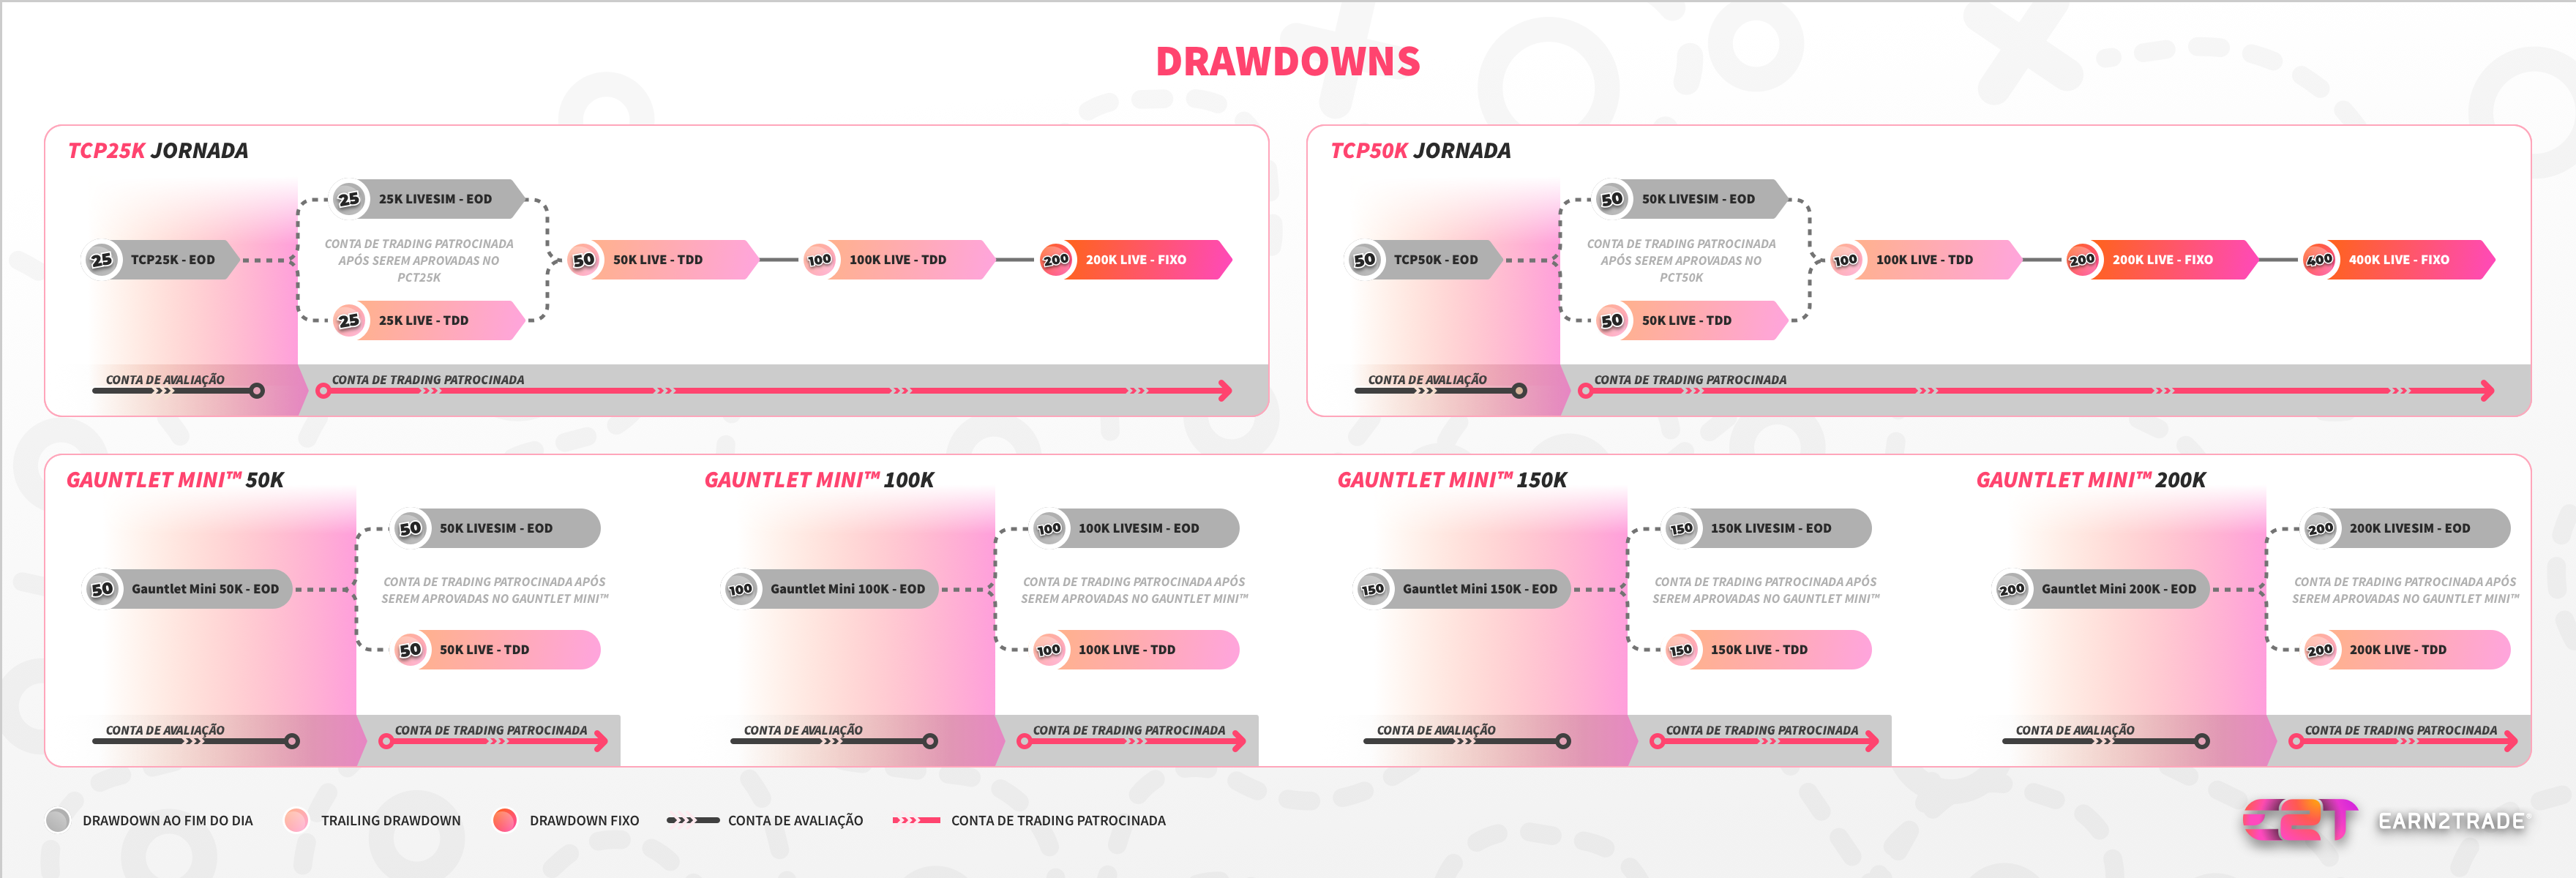 Quais são os diferentes tipos de drawdown?